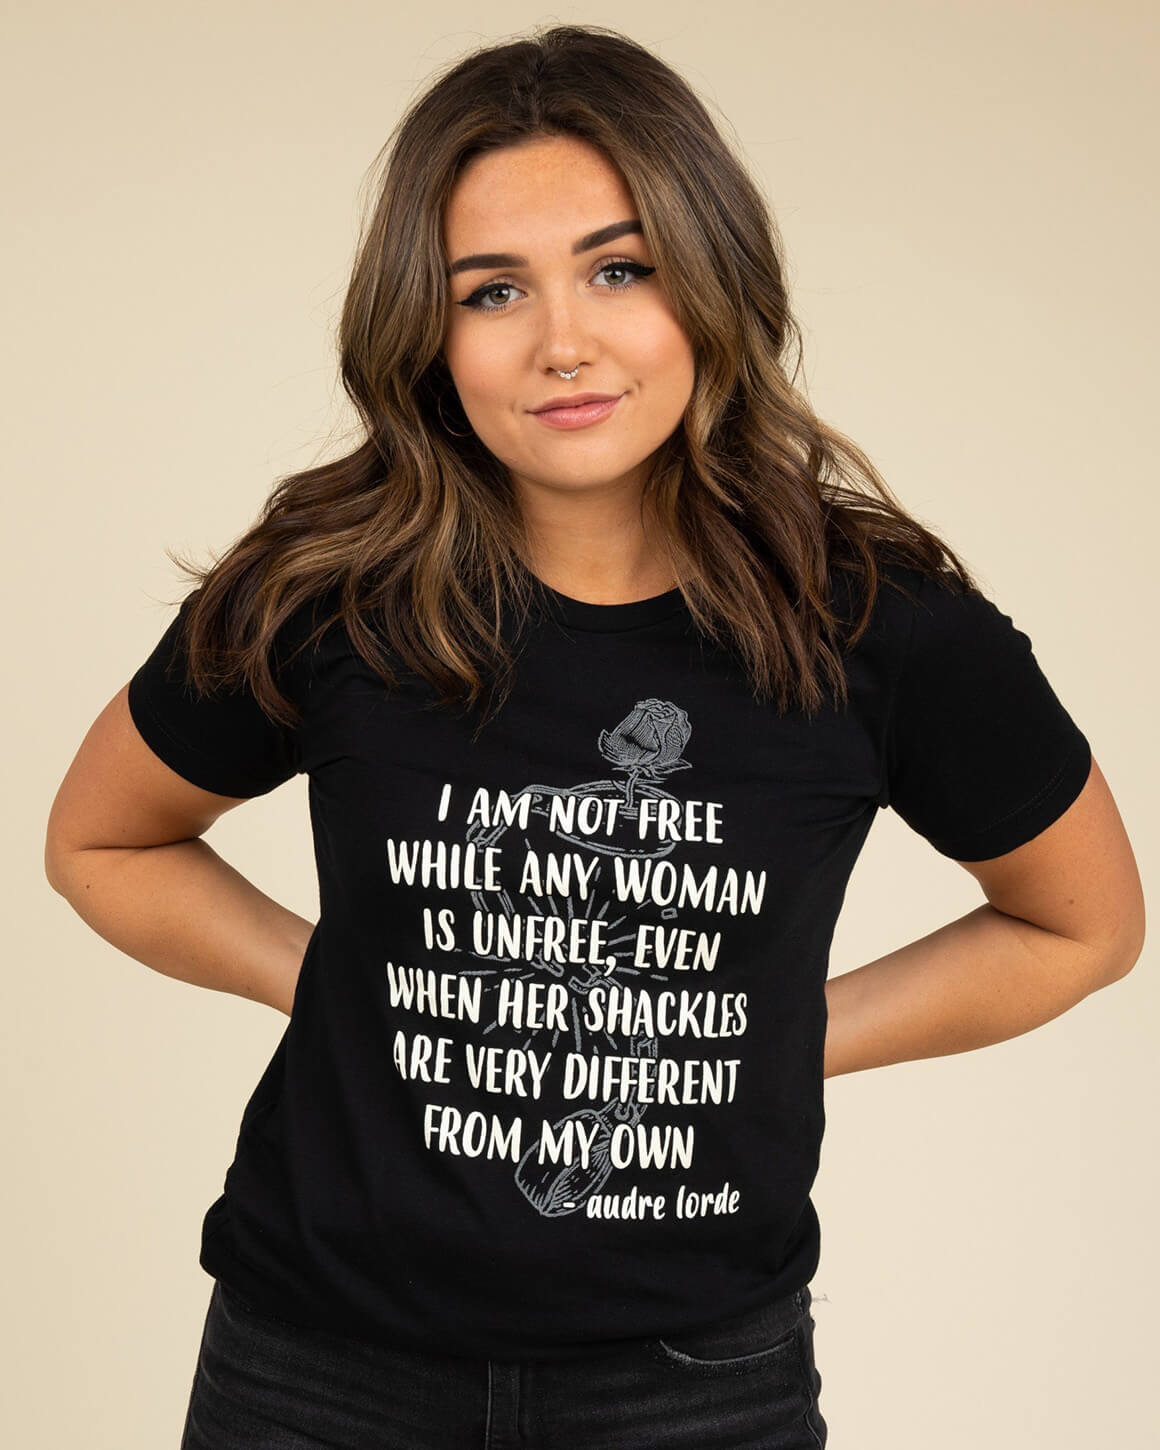 Women's Premium T-Shirt